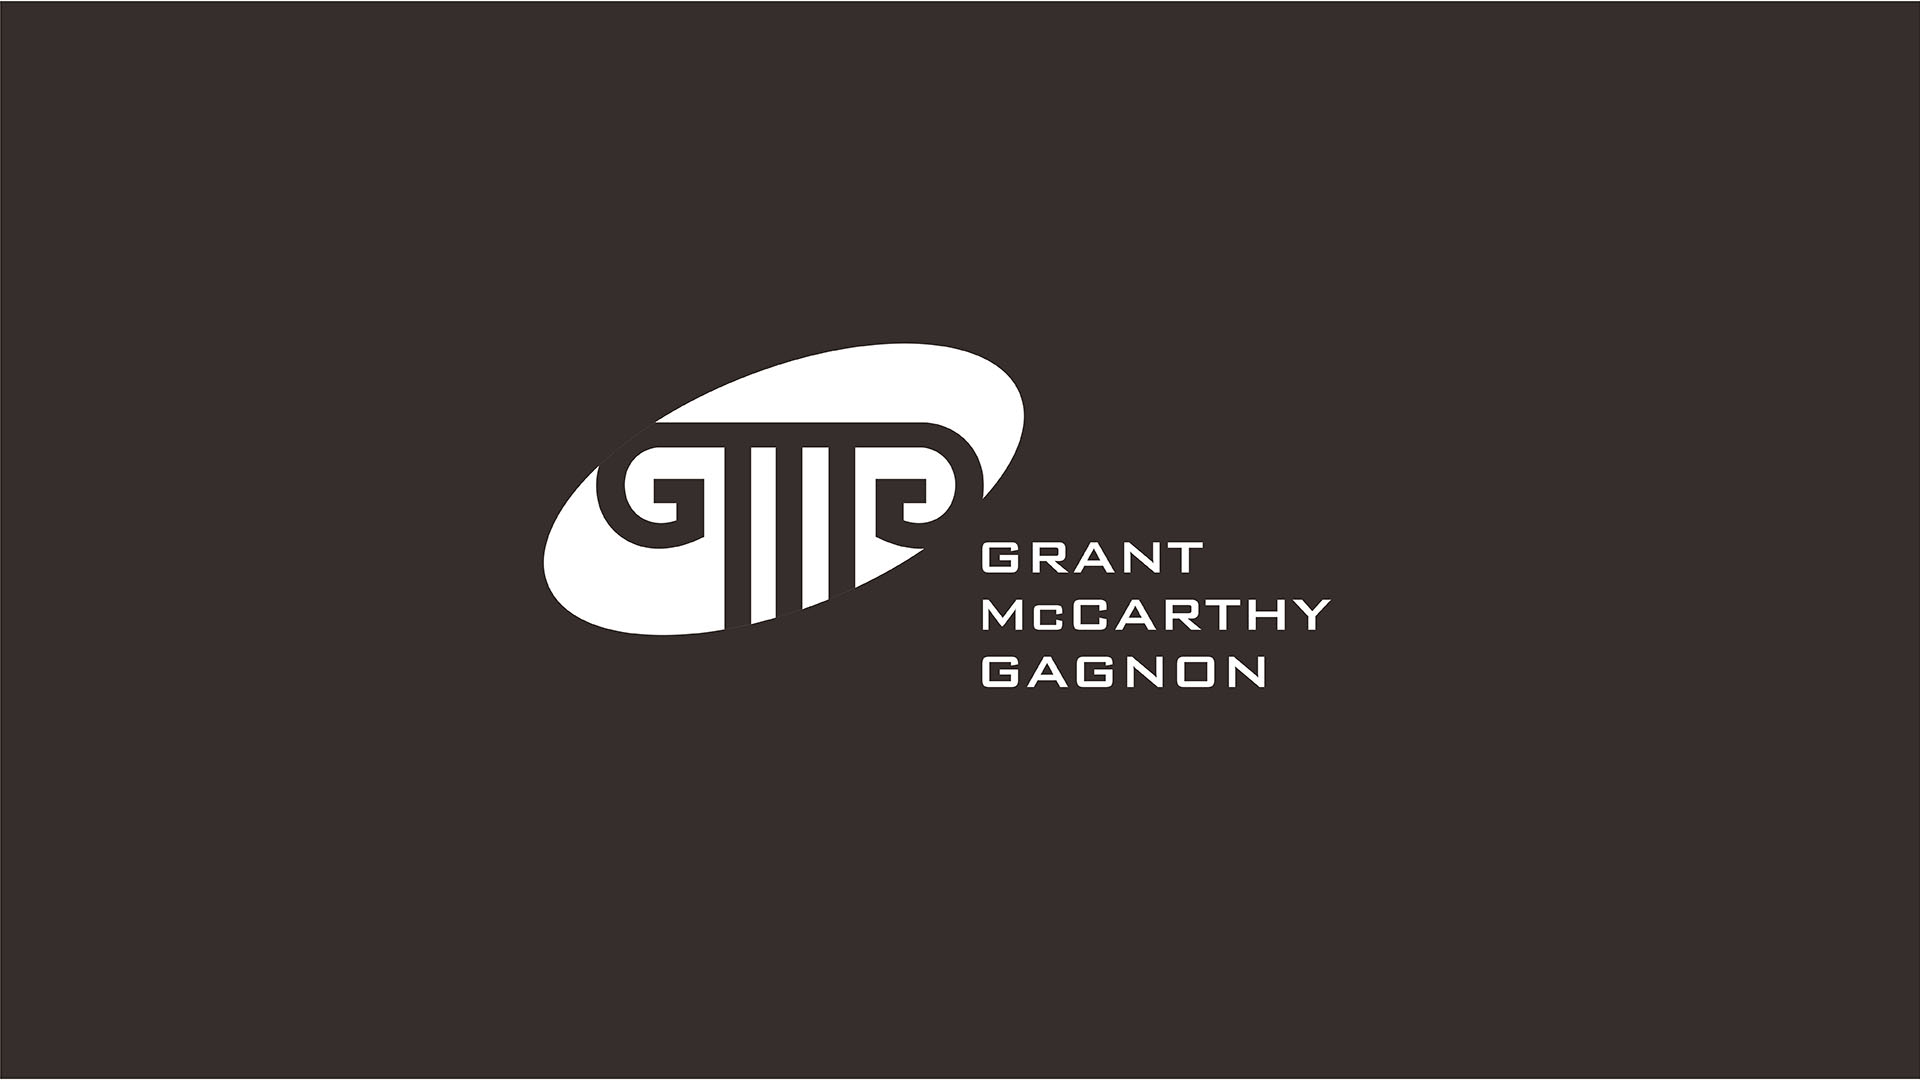 grant mccarthy gagnon white logo on brown